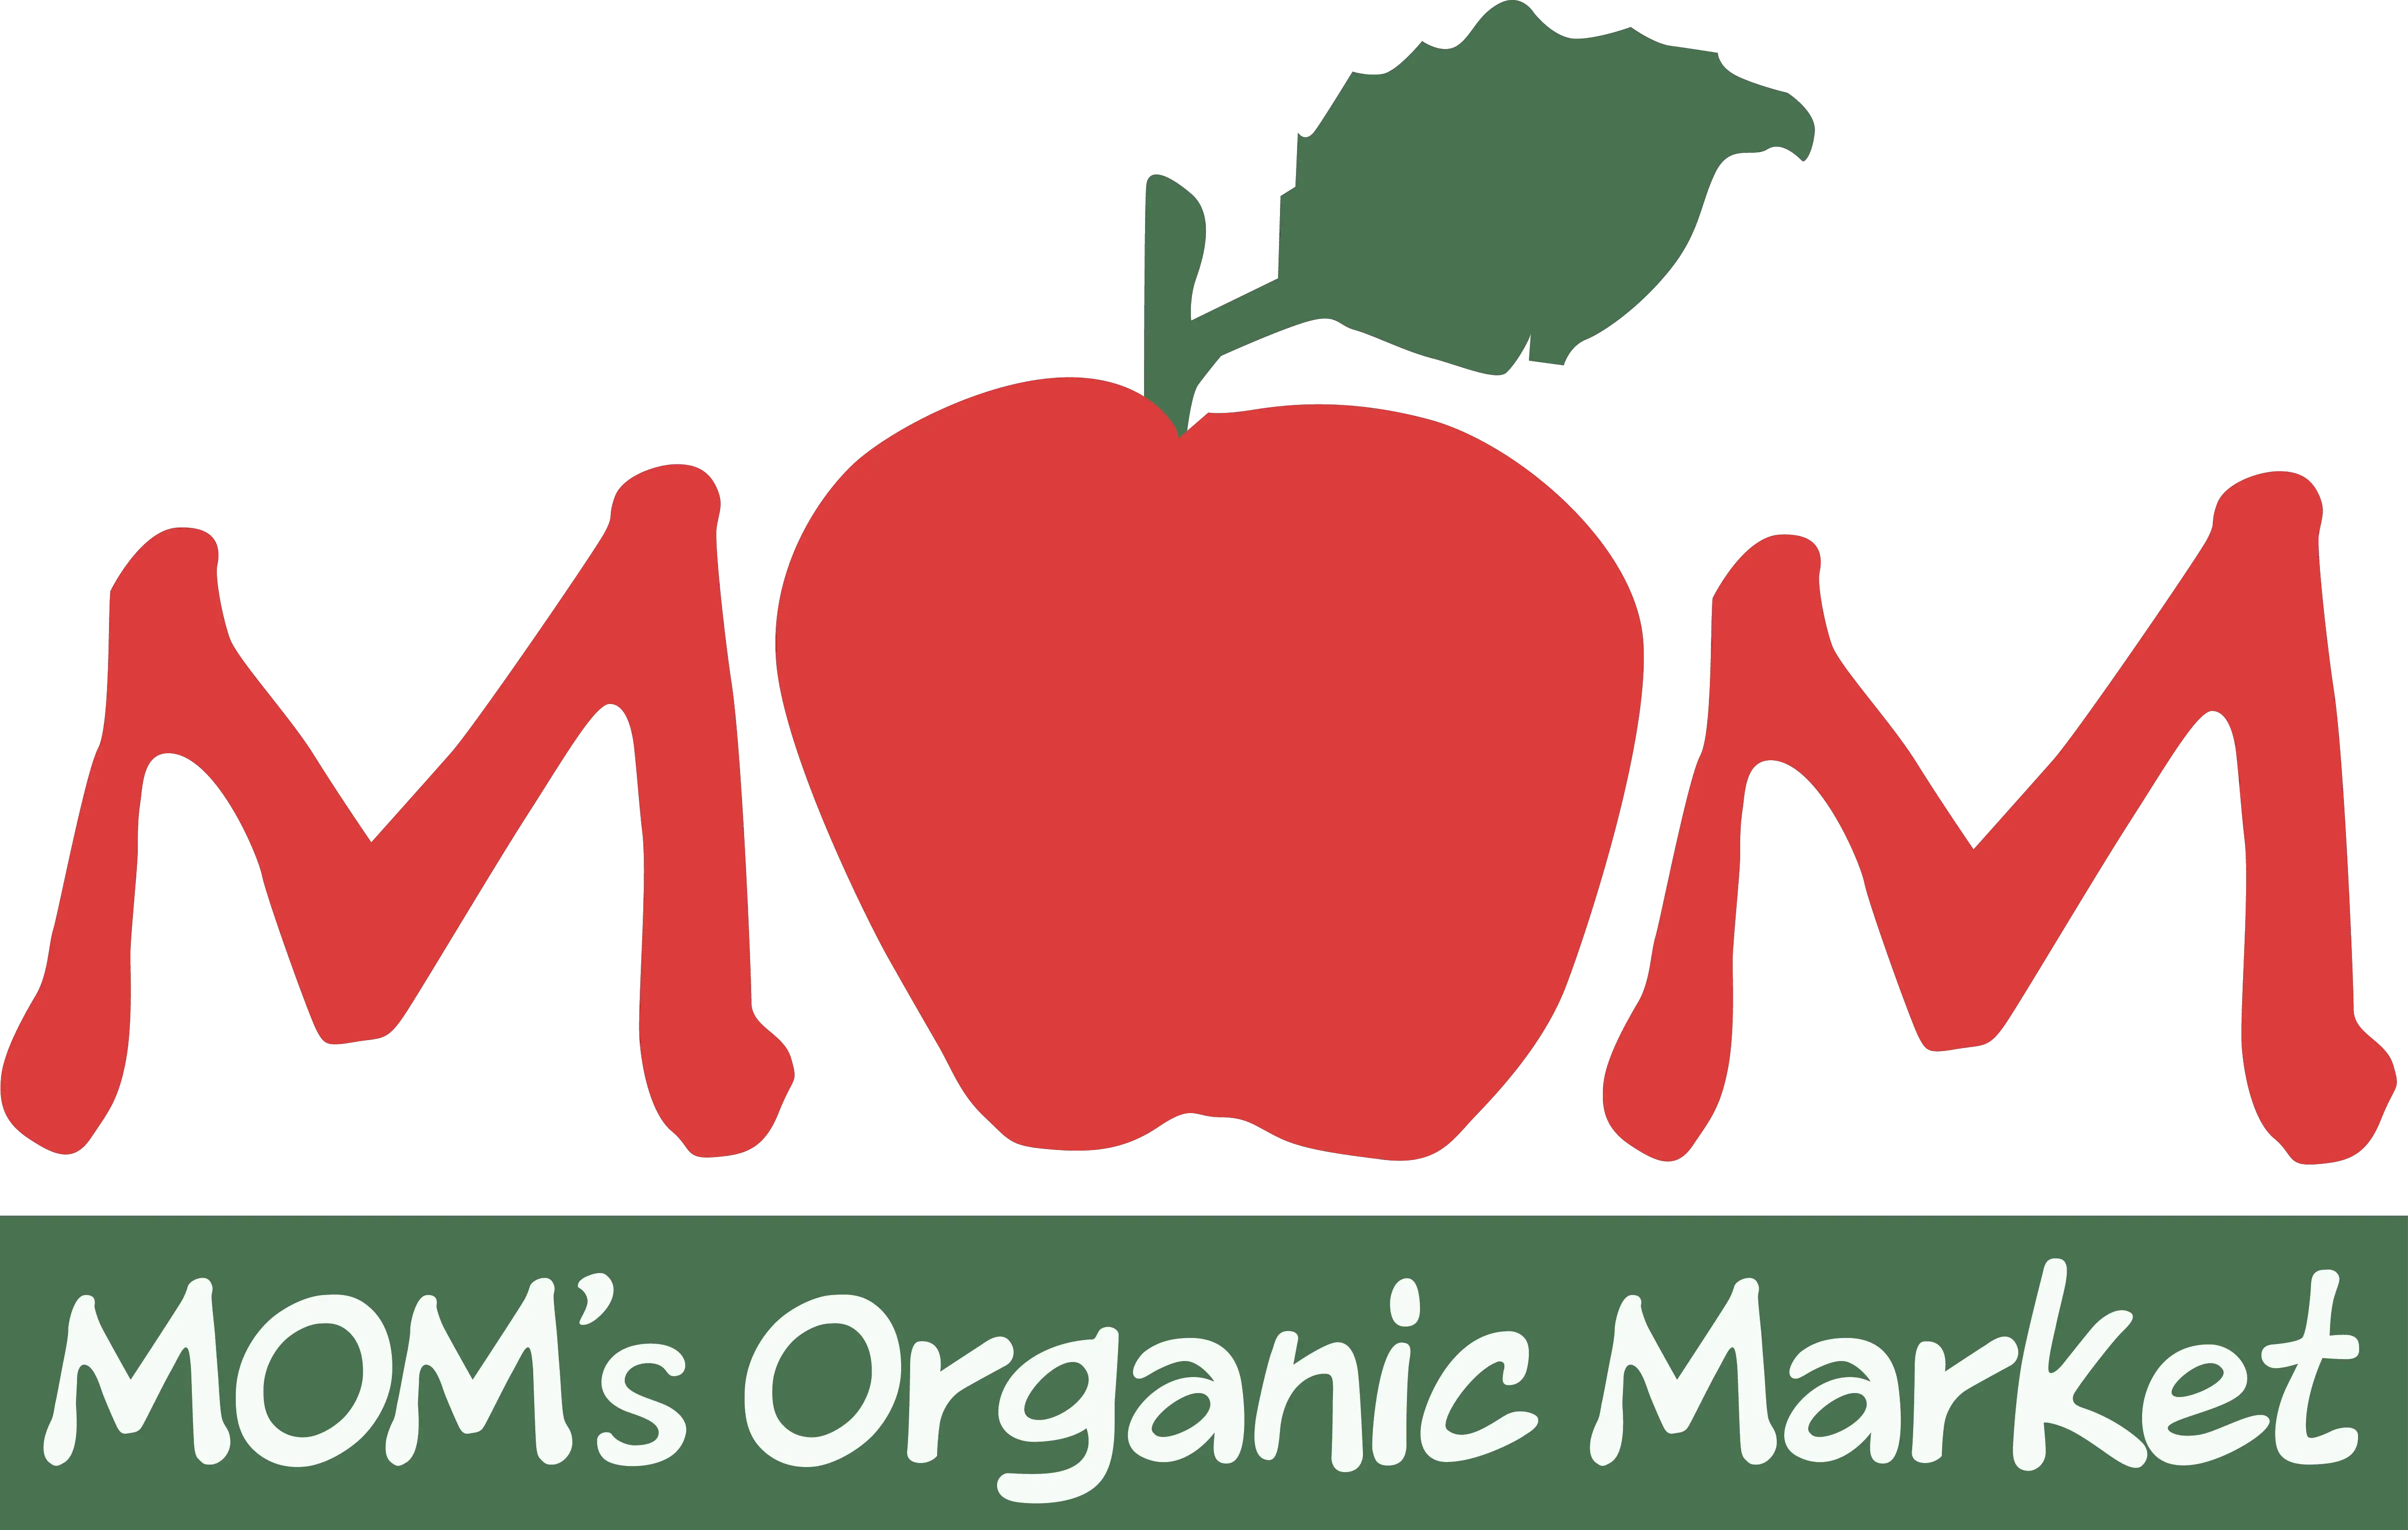 Company logo of MOM's Organic Market